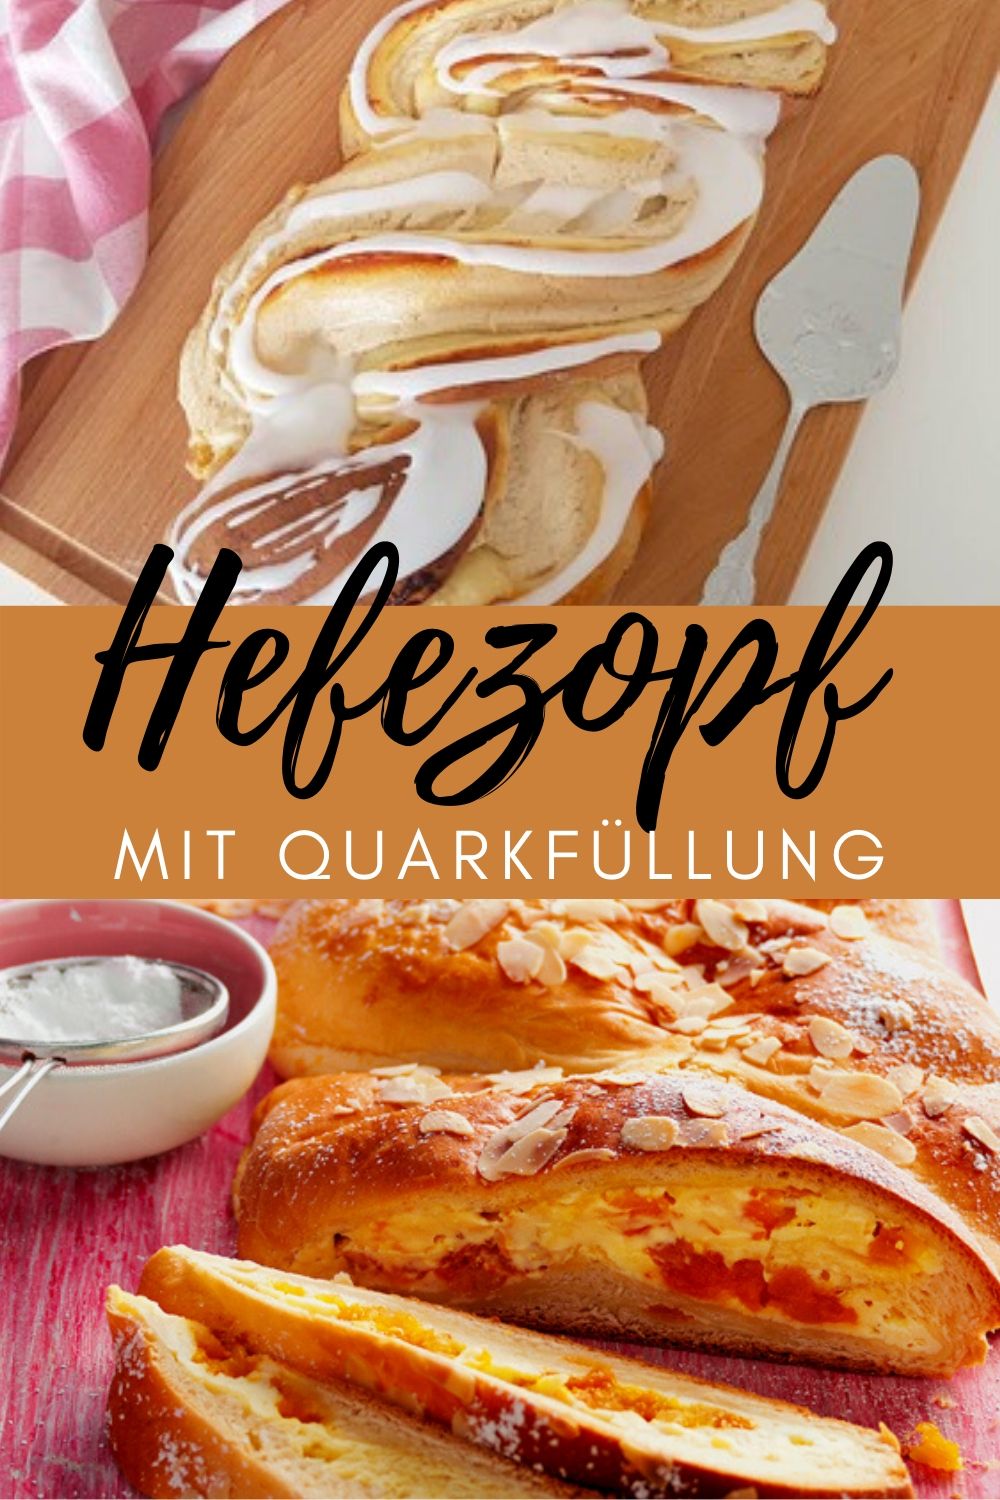 Hefezopf mit Quarkfüllung | New recipe